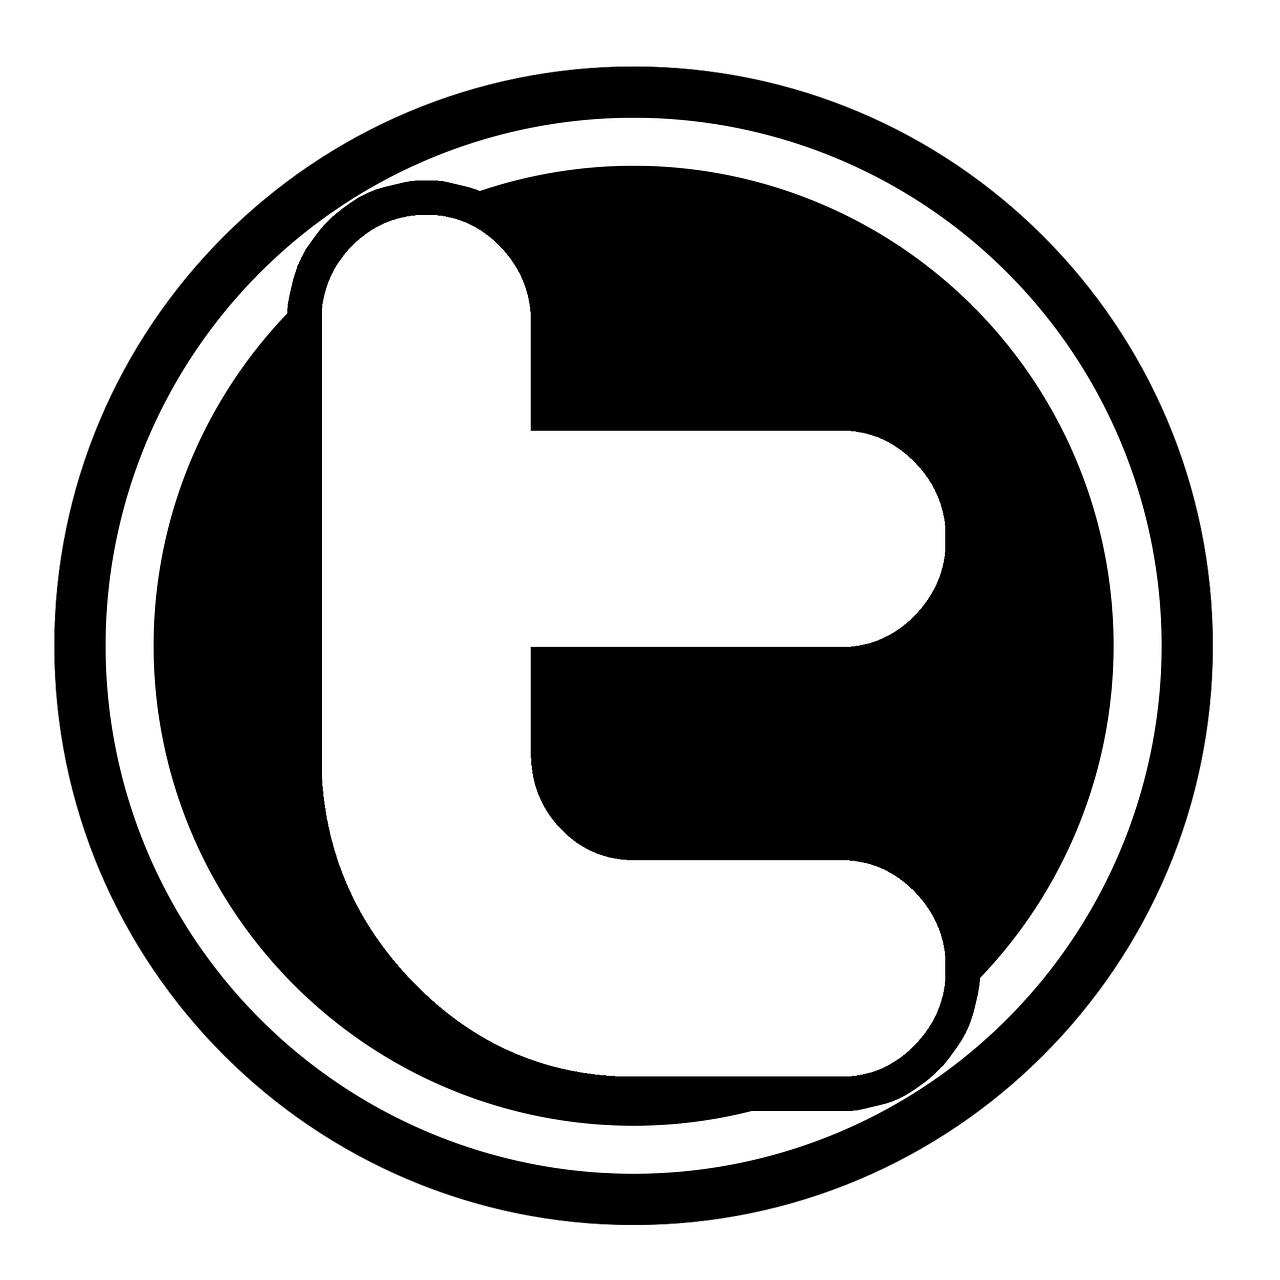 twitter logo icon free photo